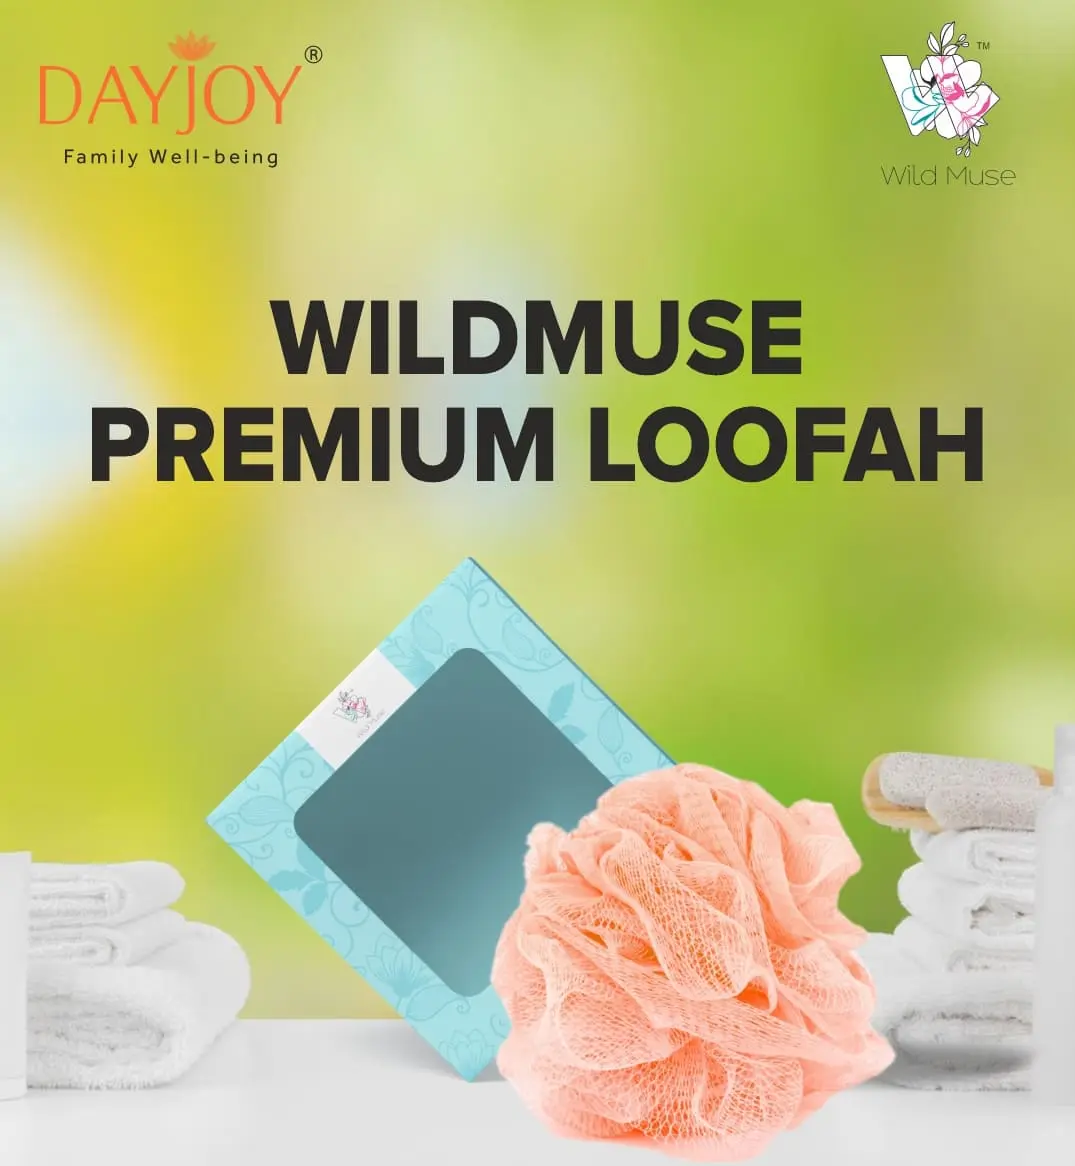 Wild Muse Premium Loofah